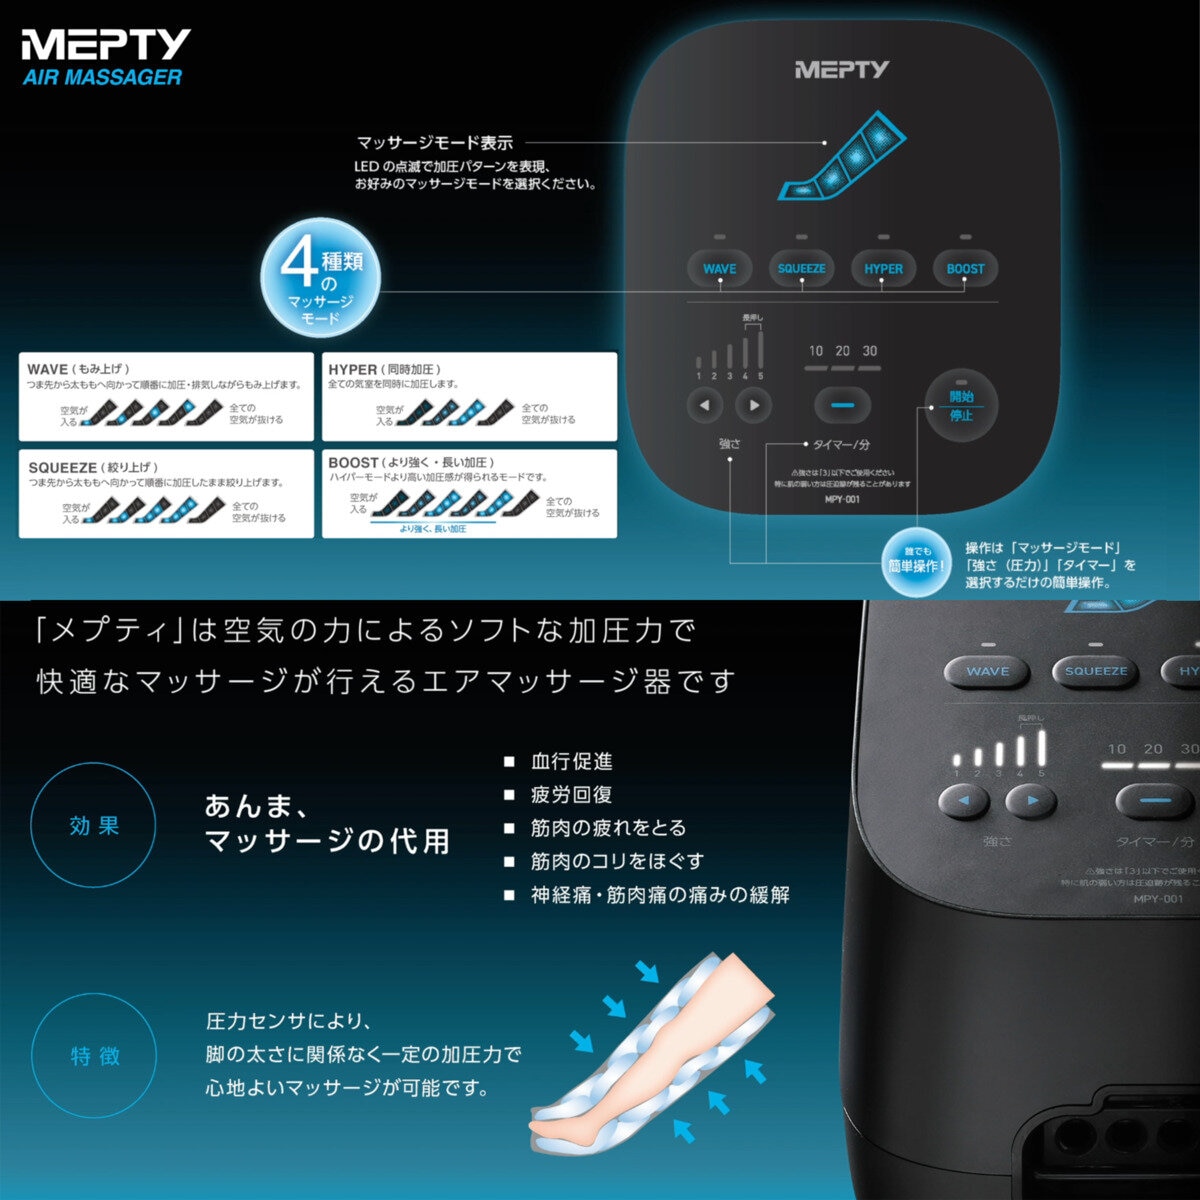 MEPTY Air Massager MPY-001